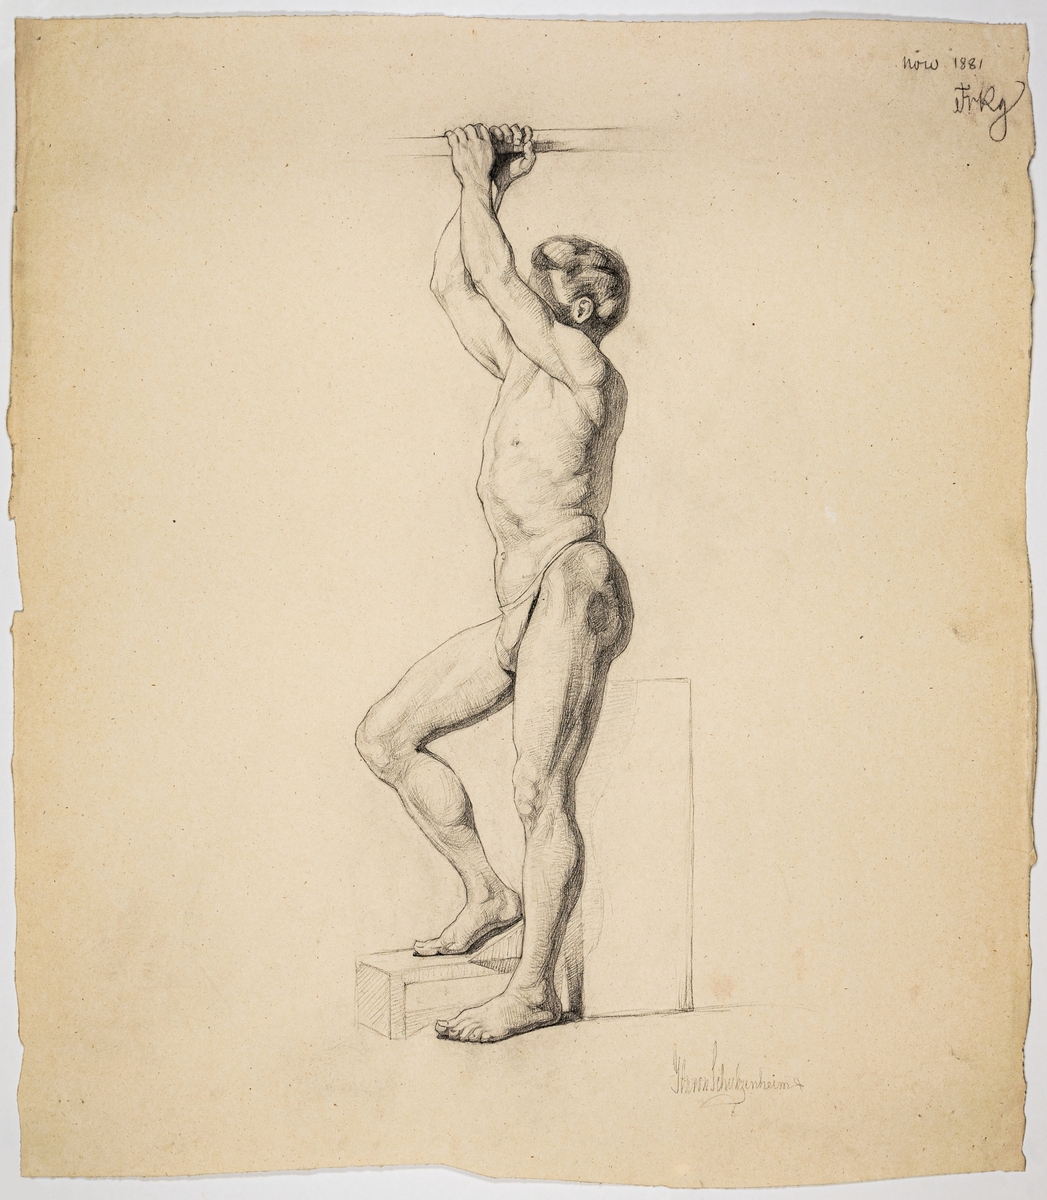 Modellstudie av stående man, anatomisk studie. Signerad Ida von Schulzenheim. 
Övrig påskrift: Nov 1881 FrRg